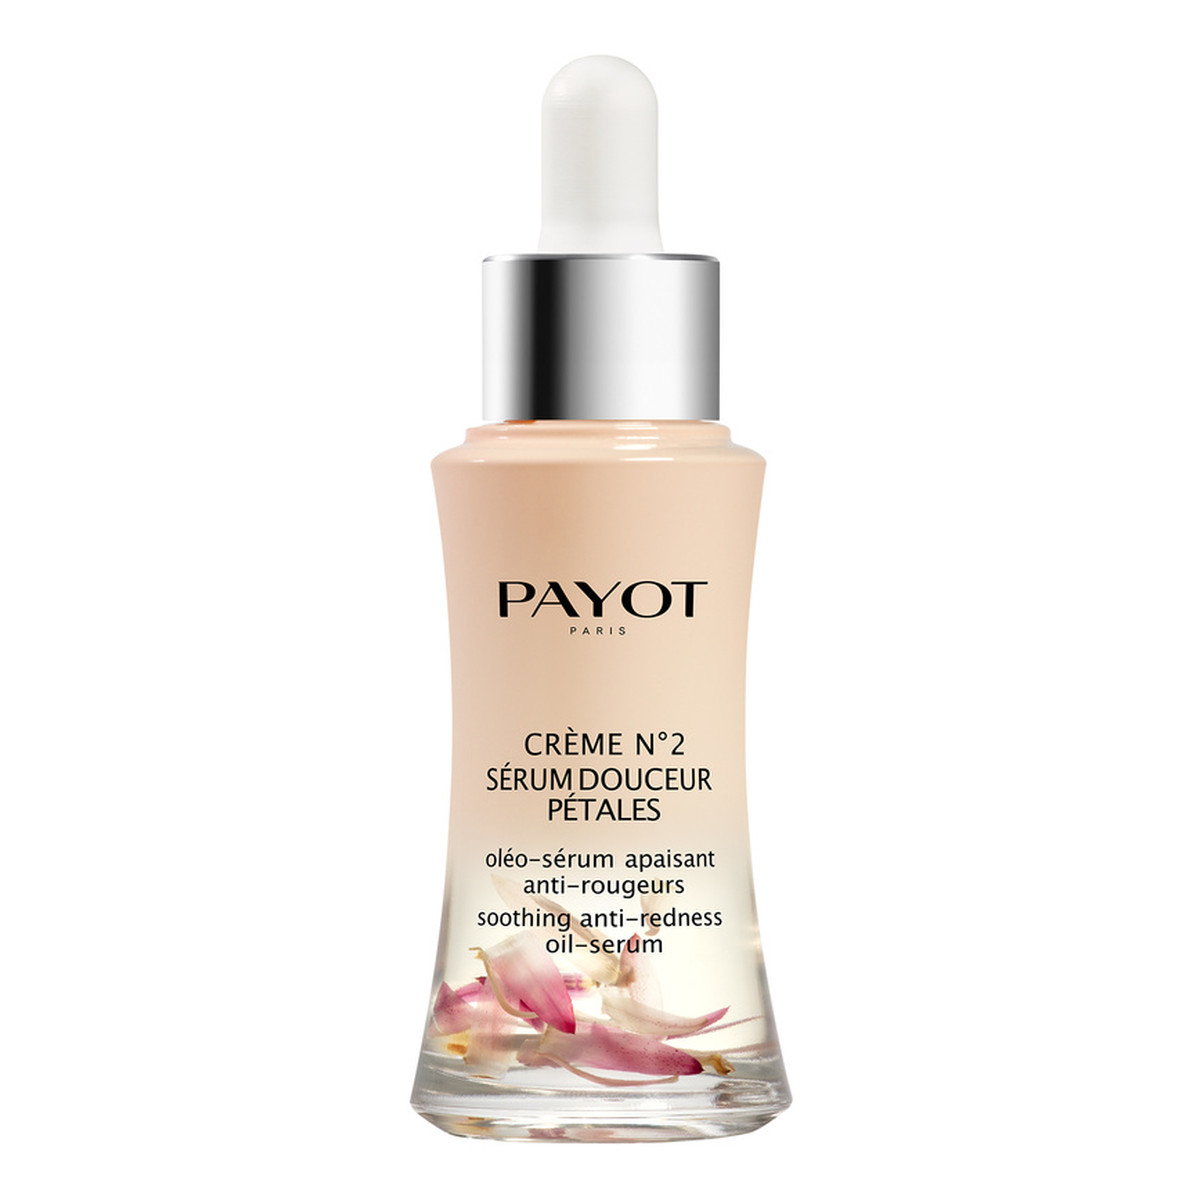 Payot Creme No2 Soothing Anti-Redness Oil-Serum kojące serum olejowe do twarzy przeciw zaczerwienieniom 30ml